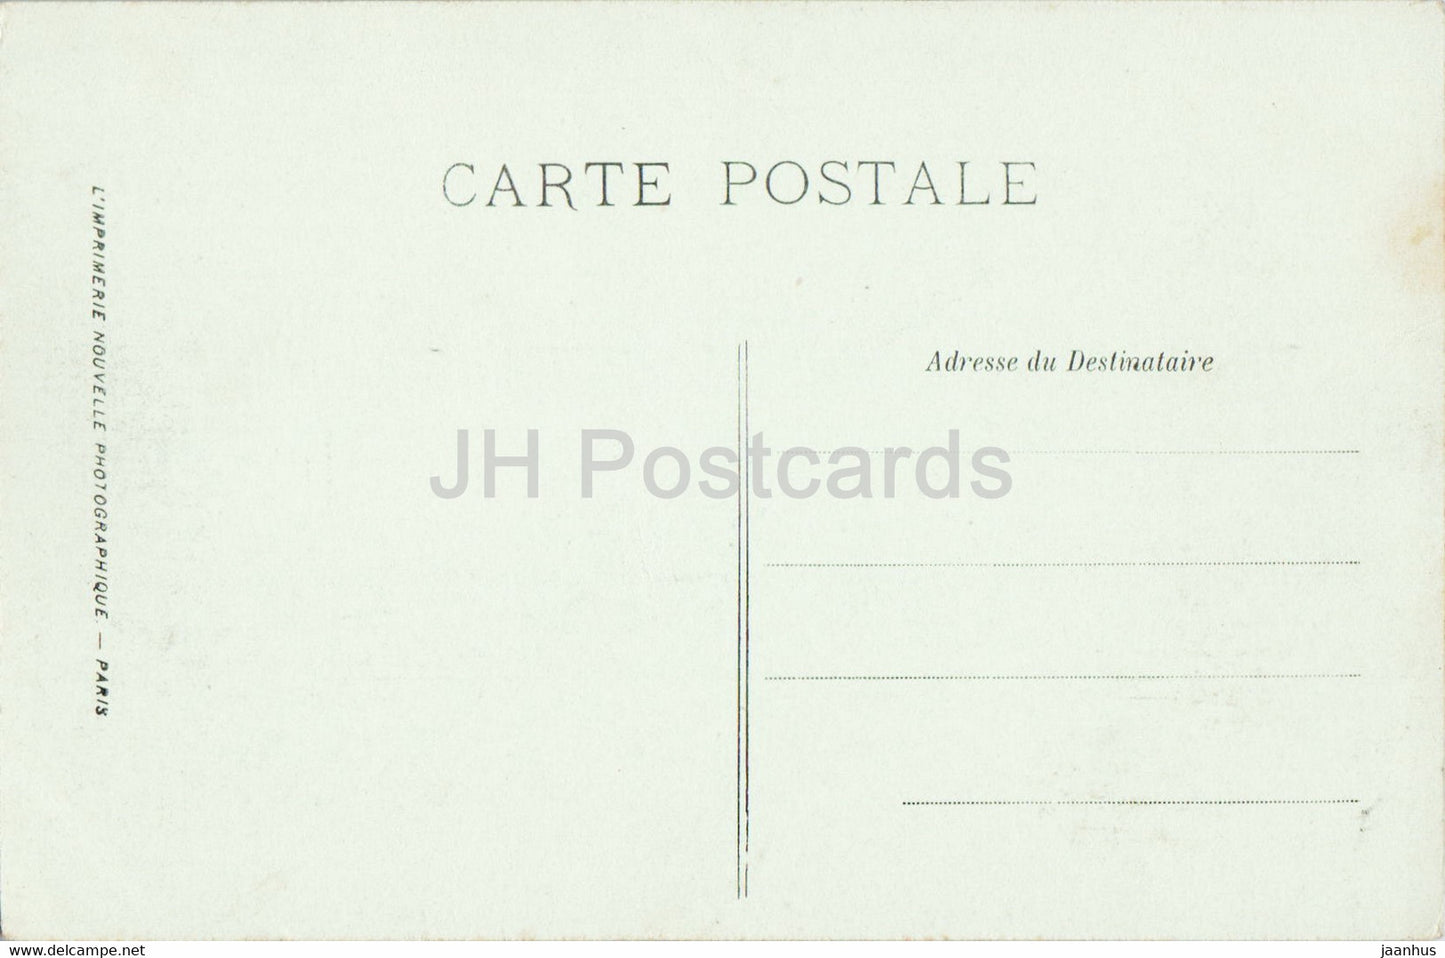 Fontainebleau - Rue Grande - old postcard - France - unused